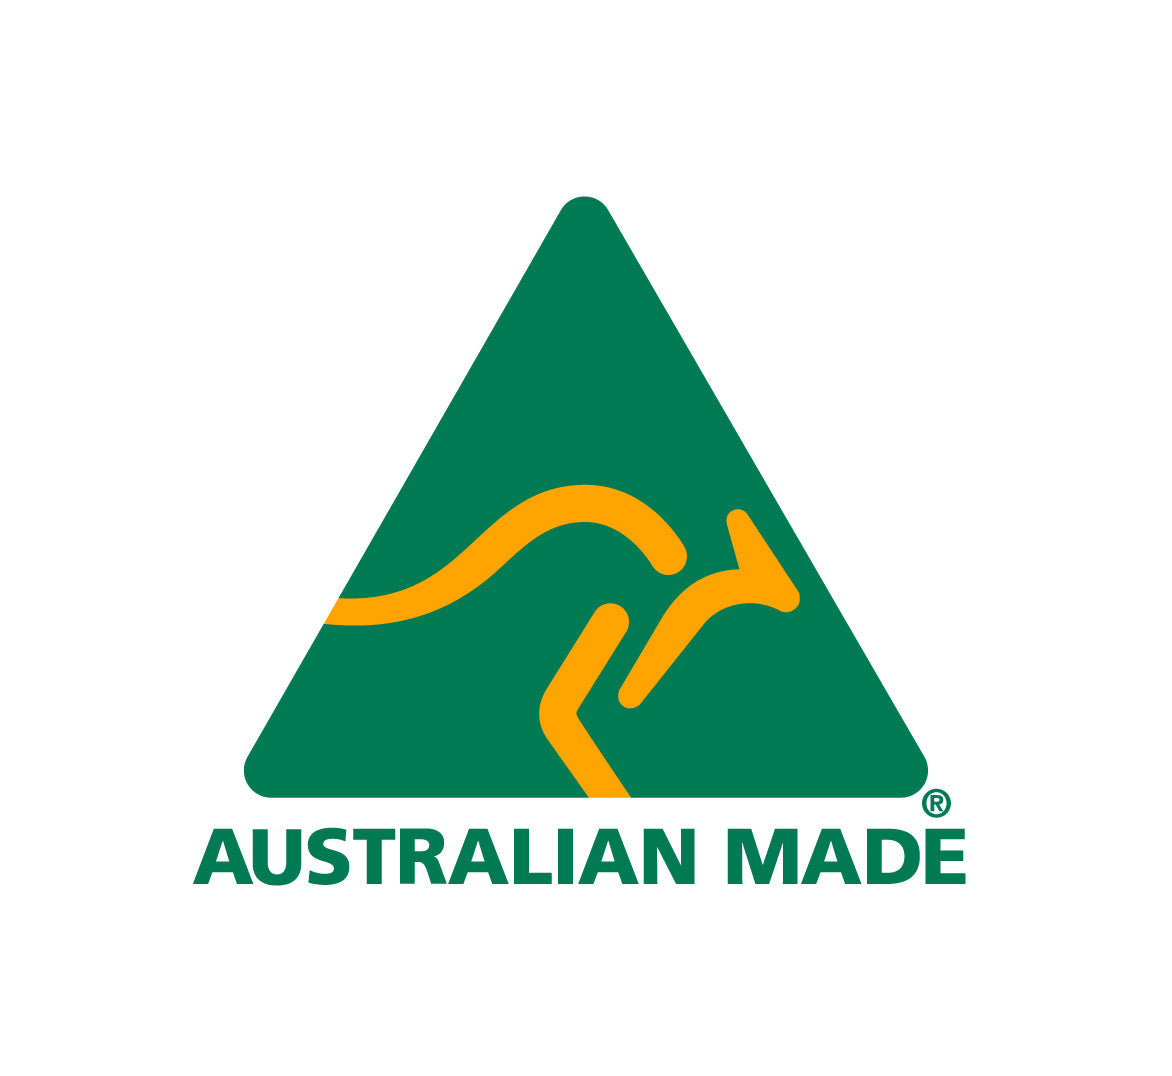 Australian made registered logo